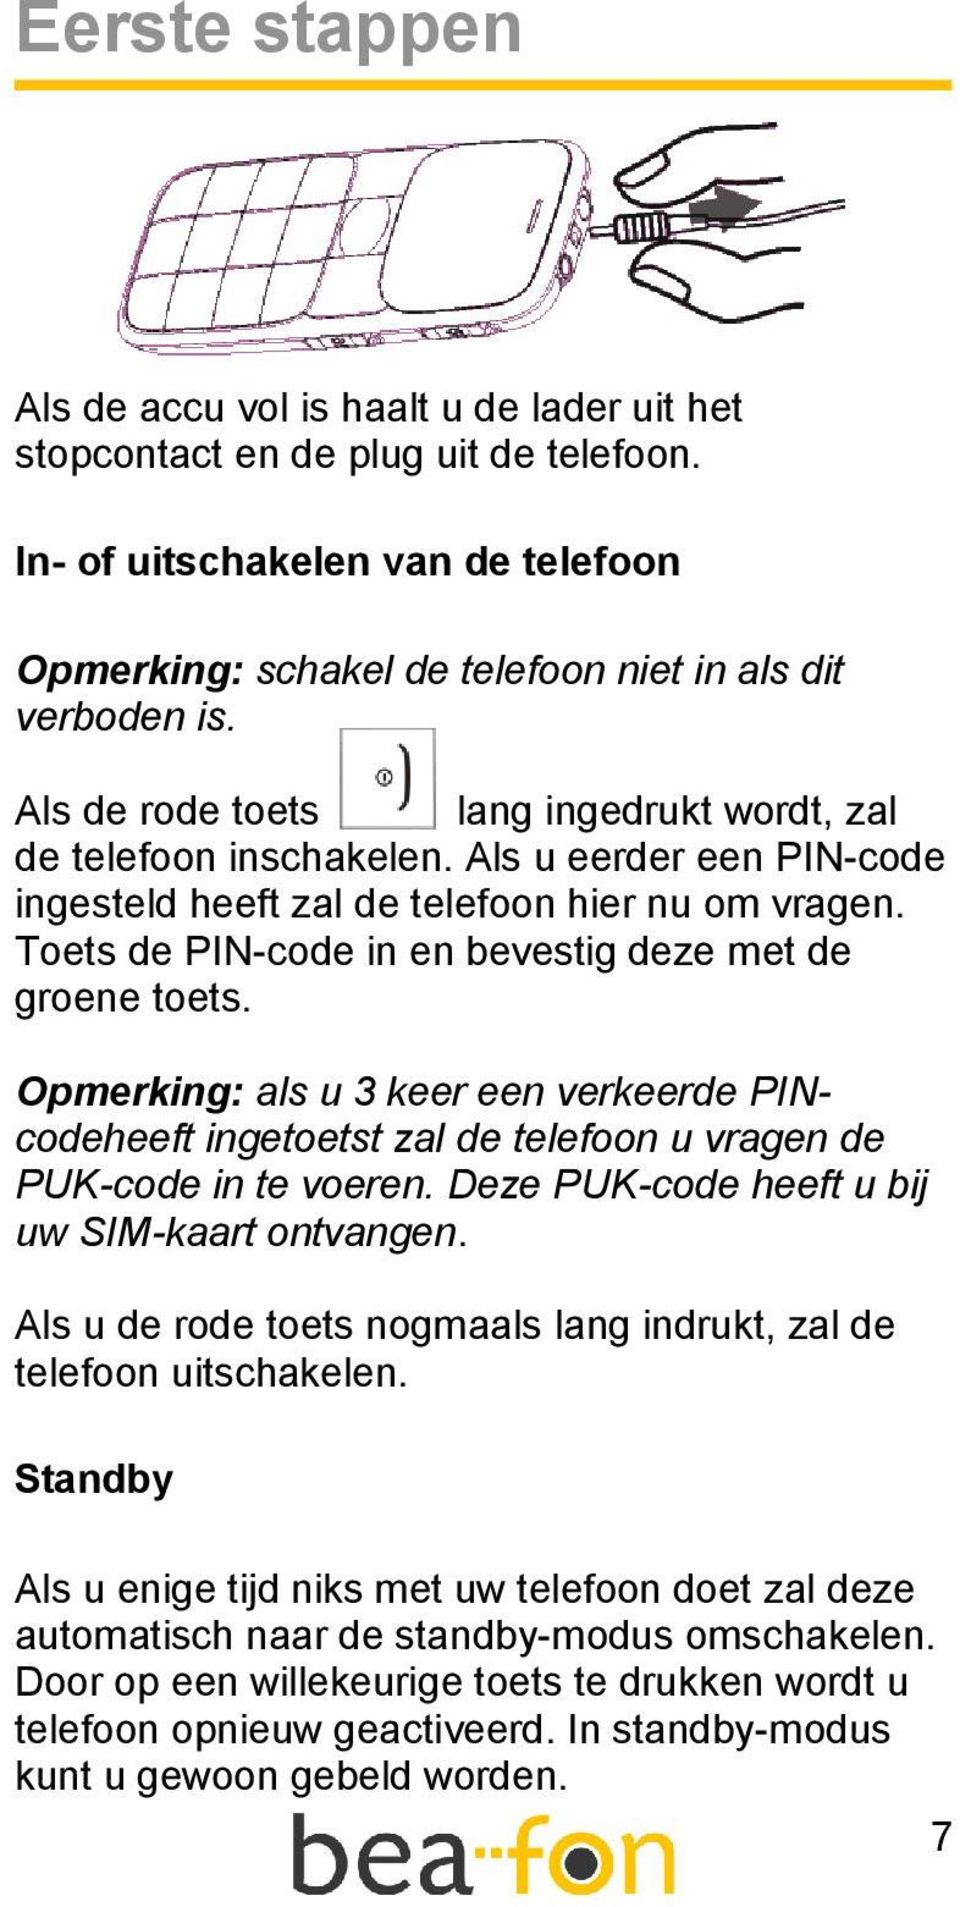 Toets de PIN-code in en bevestig deze met de groene toets. Opmerking: als u 3 keer een verkeerde PINcodeheeft ingetoetst zal de telefoon u vragen de PUK-code in te voeren.